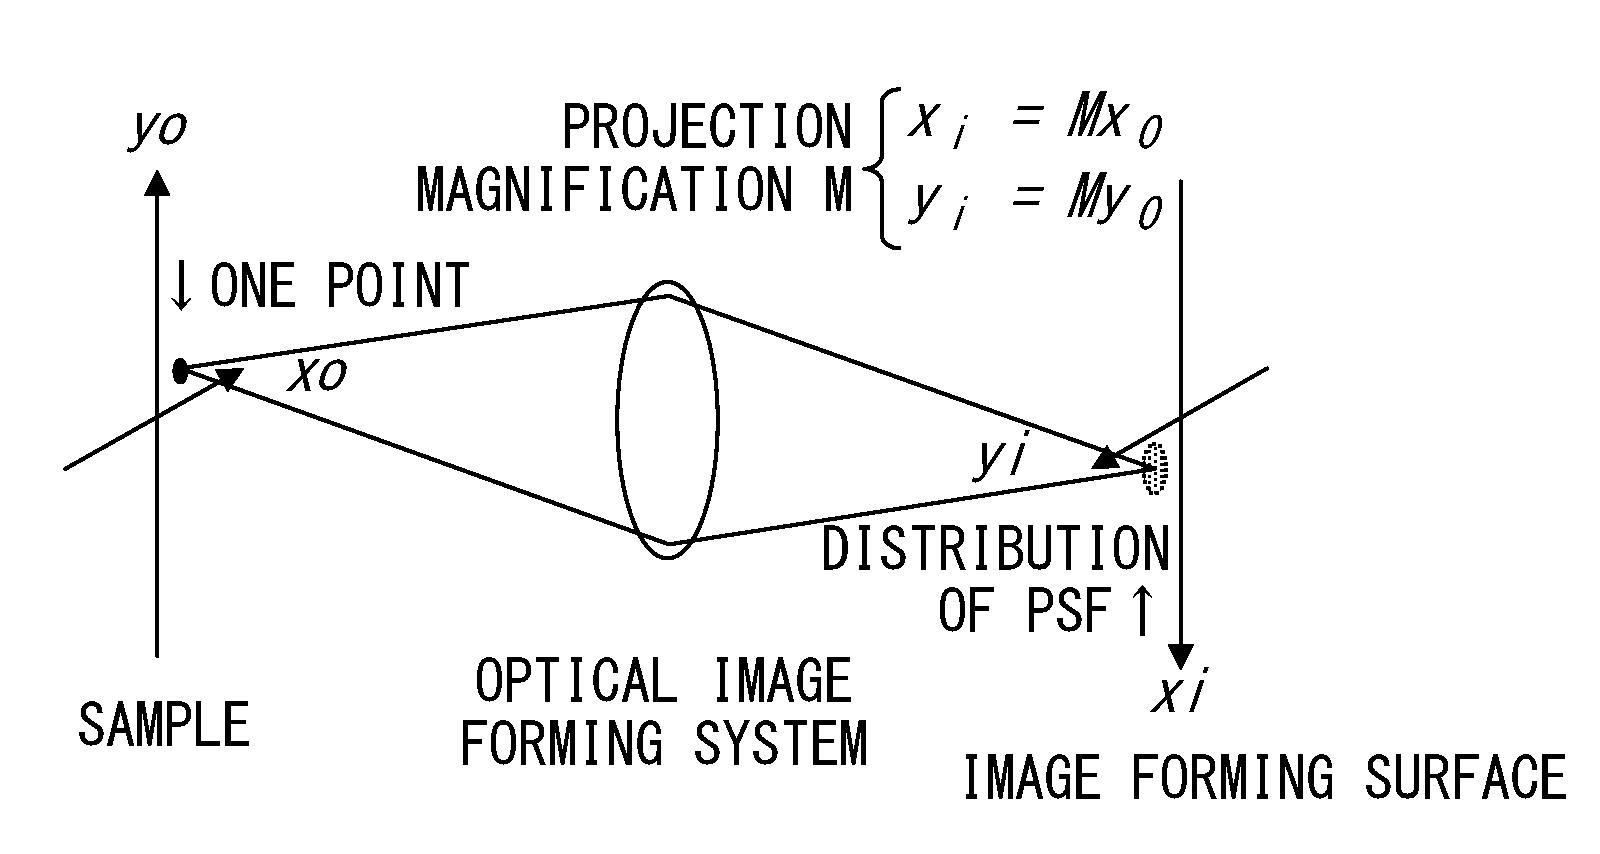 Sample observation device for generating super resolution image